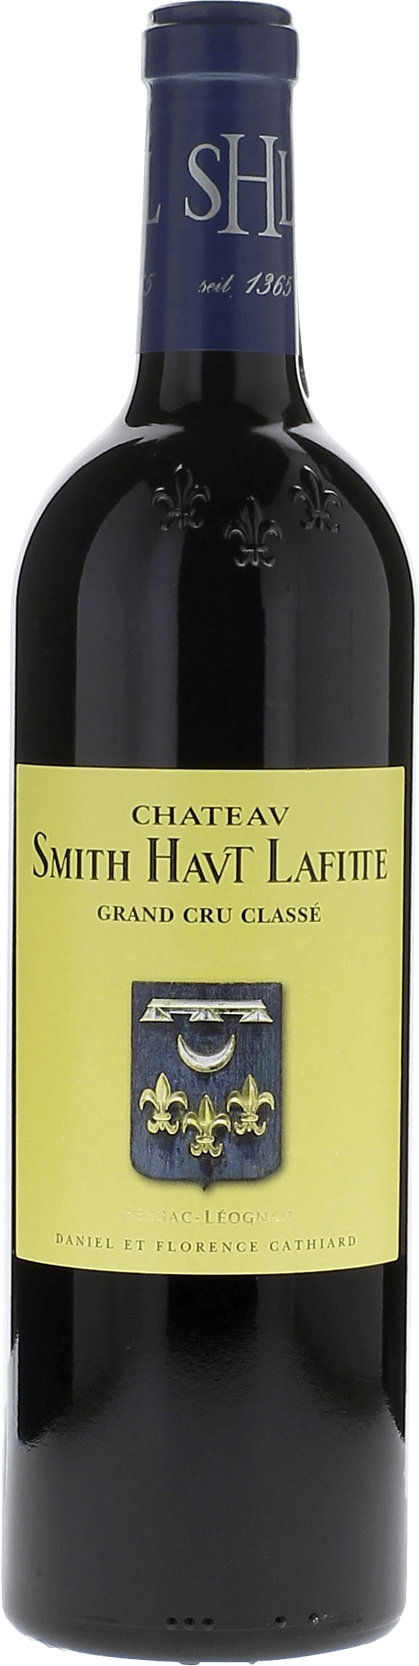 Smith haut lafitte 1989 Grand Cru Class Graves, Bordeaux rouge